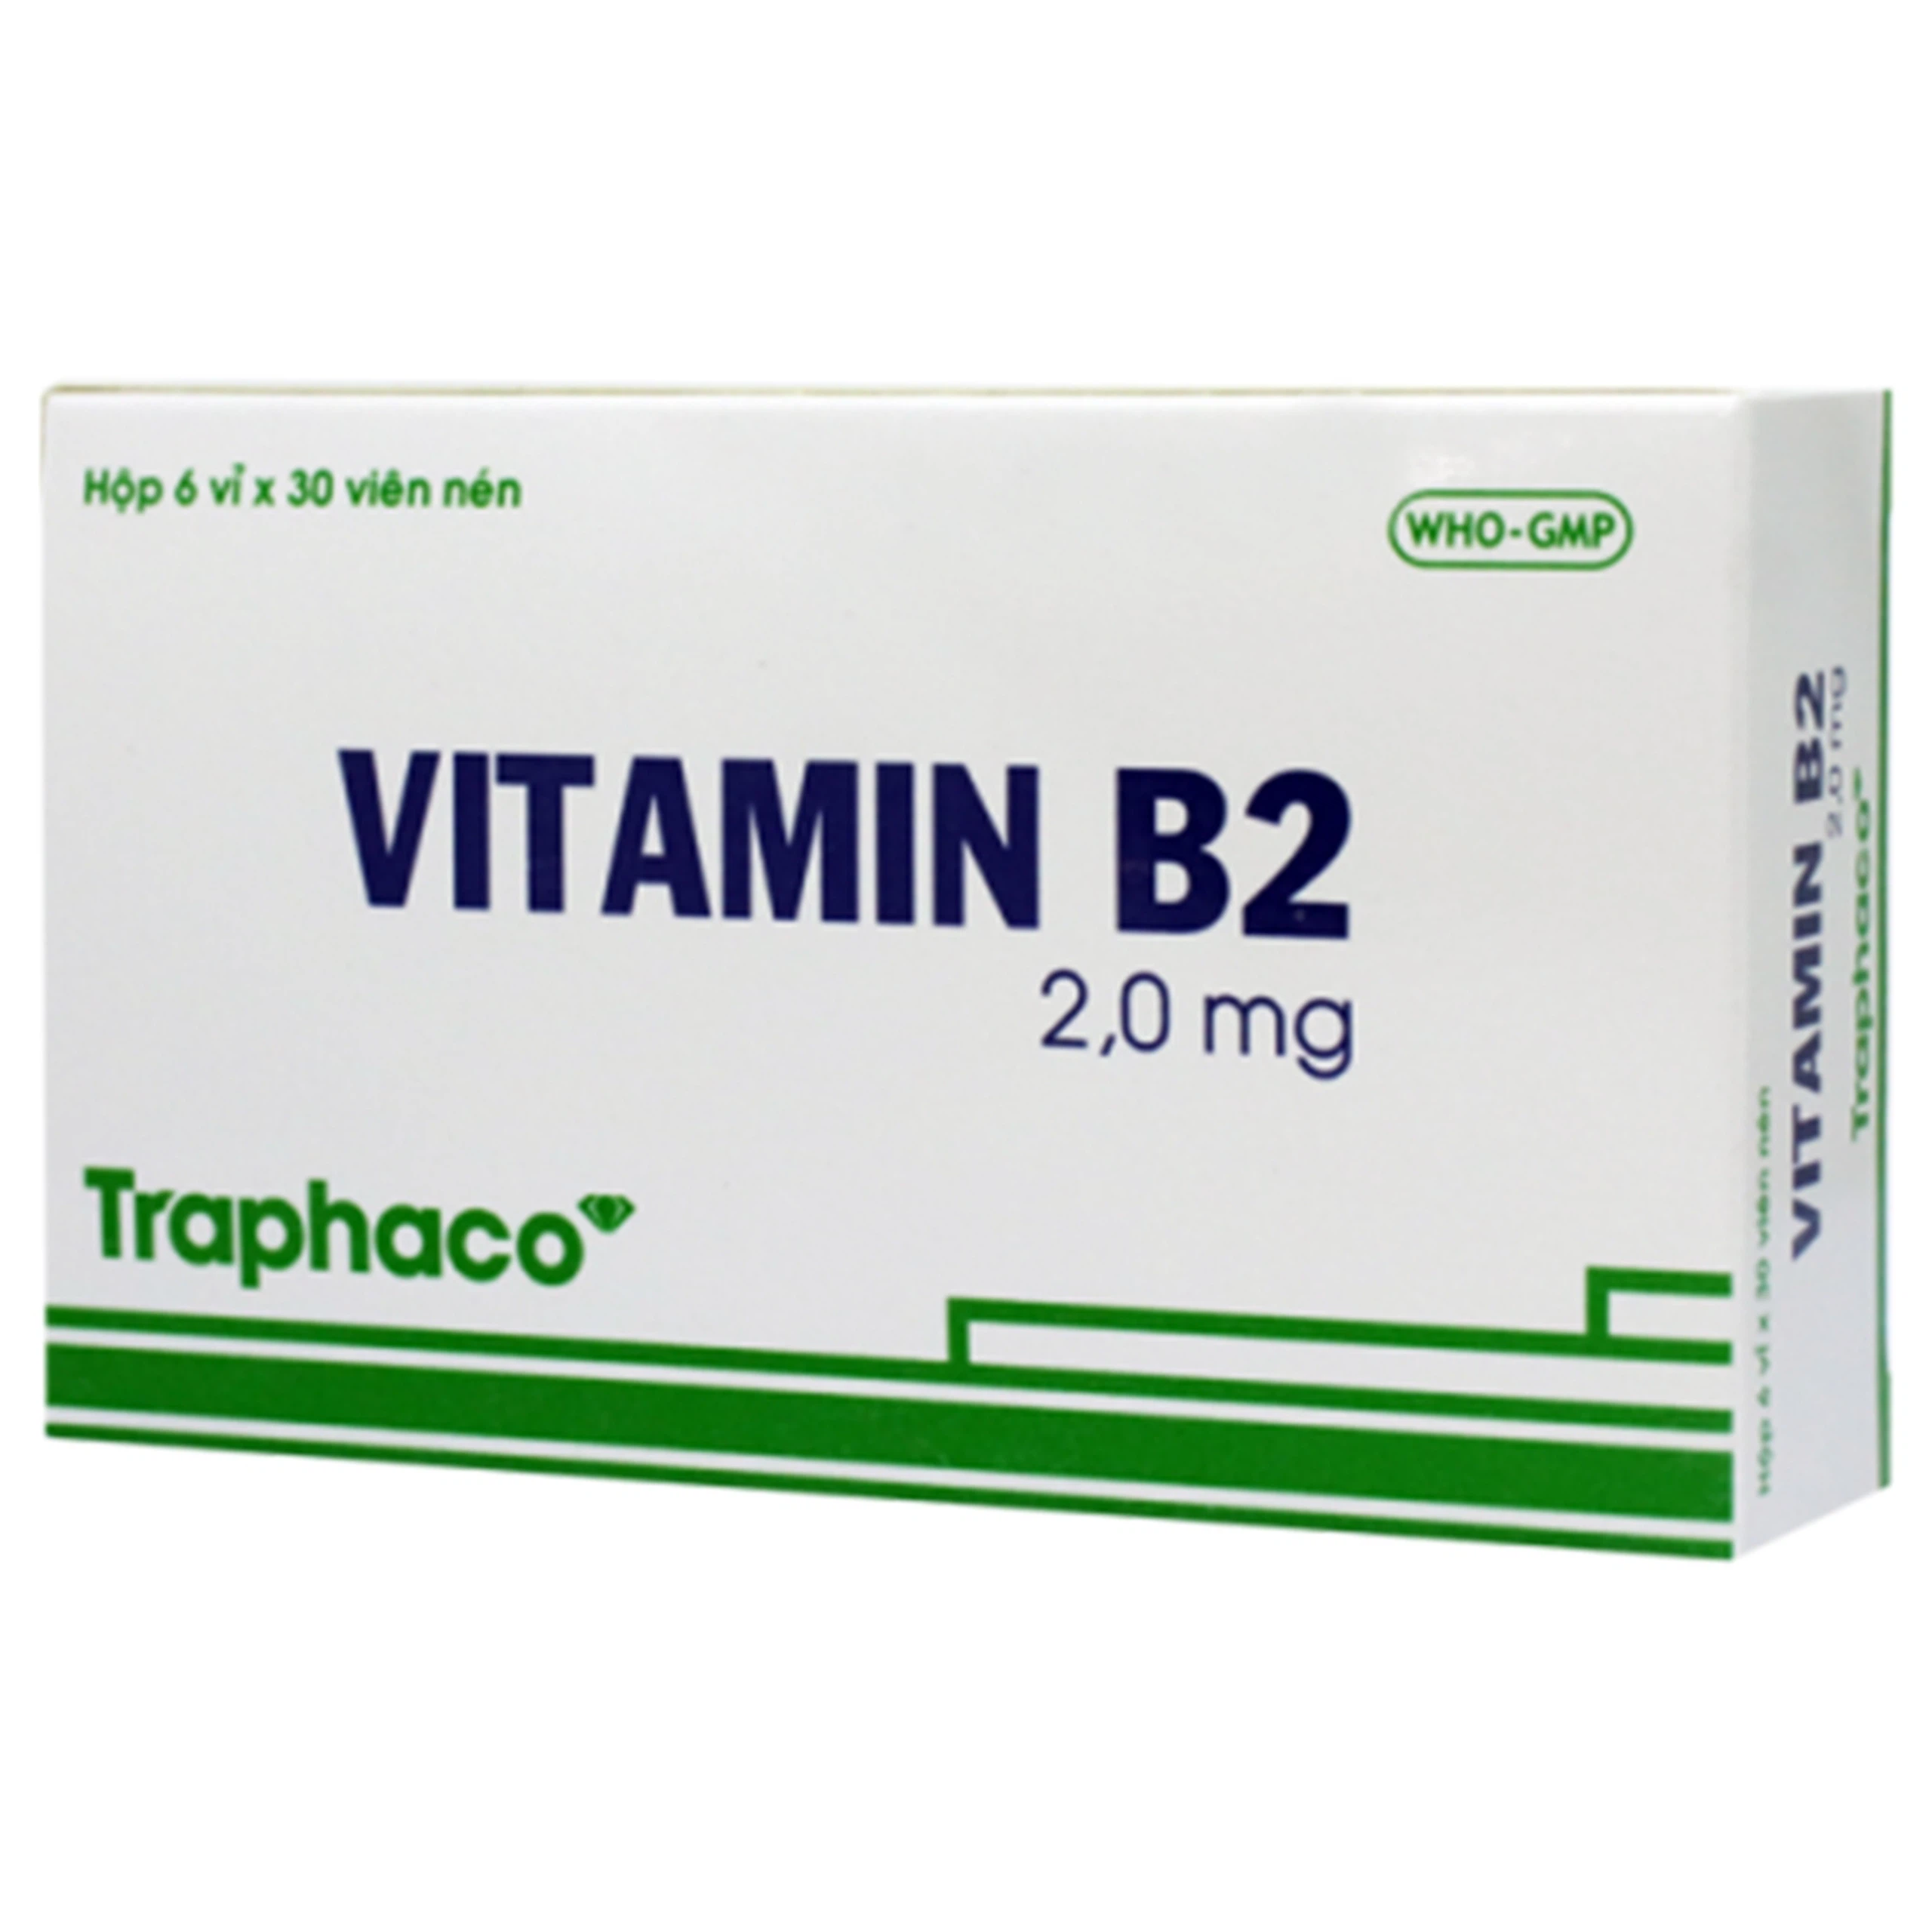 Thuốc Vitamin B2 2.0mg Traphaco phòng và điều trị khi thiếu Vitamin B2 (6 vỉ x 30 viên)